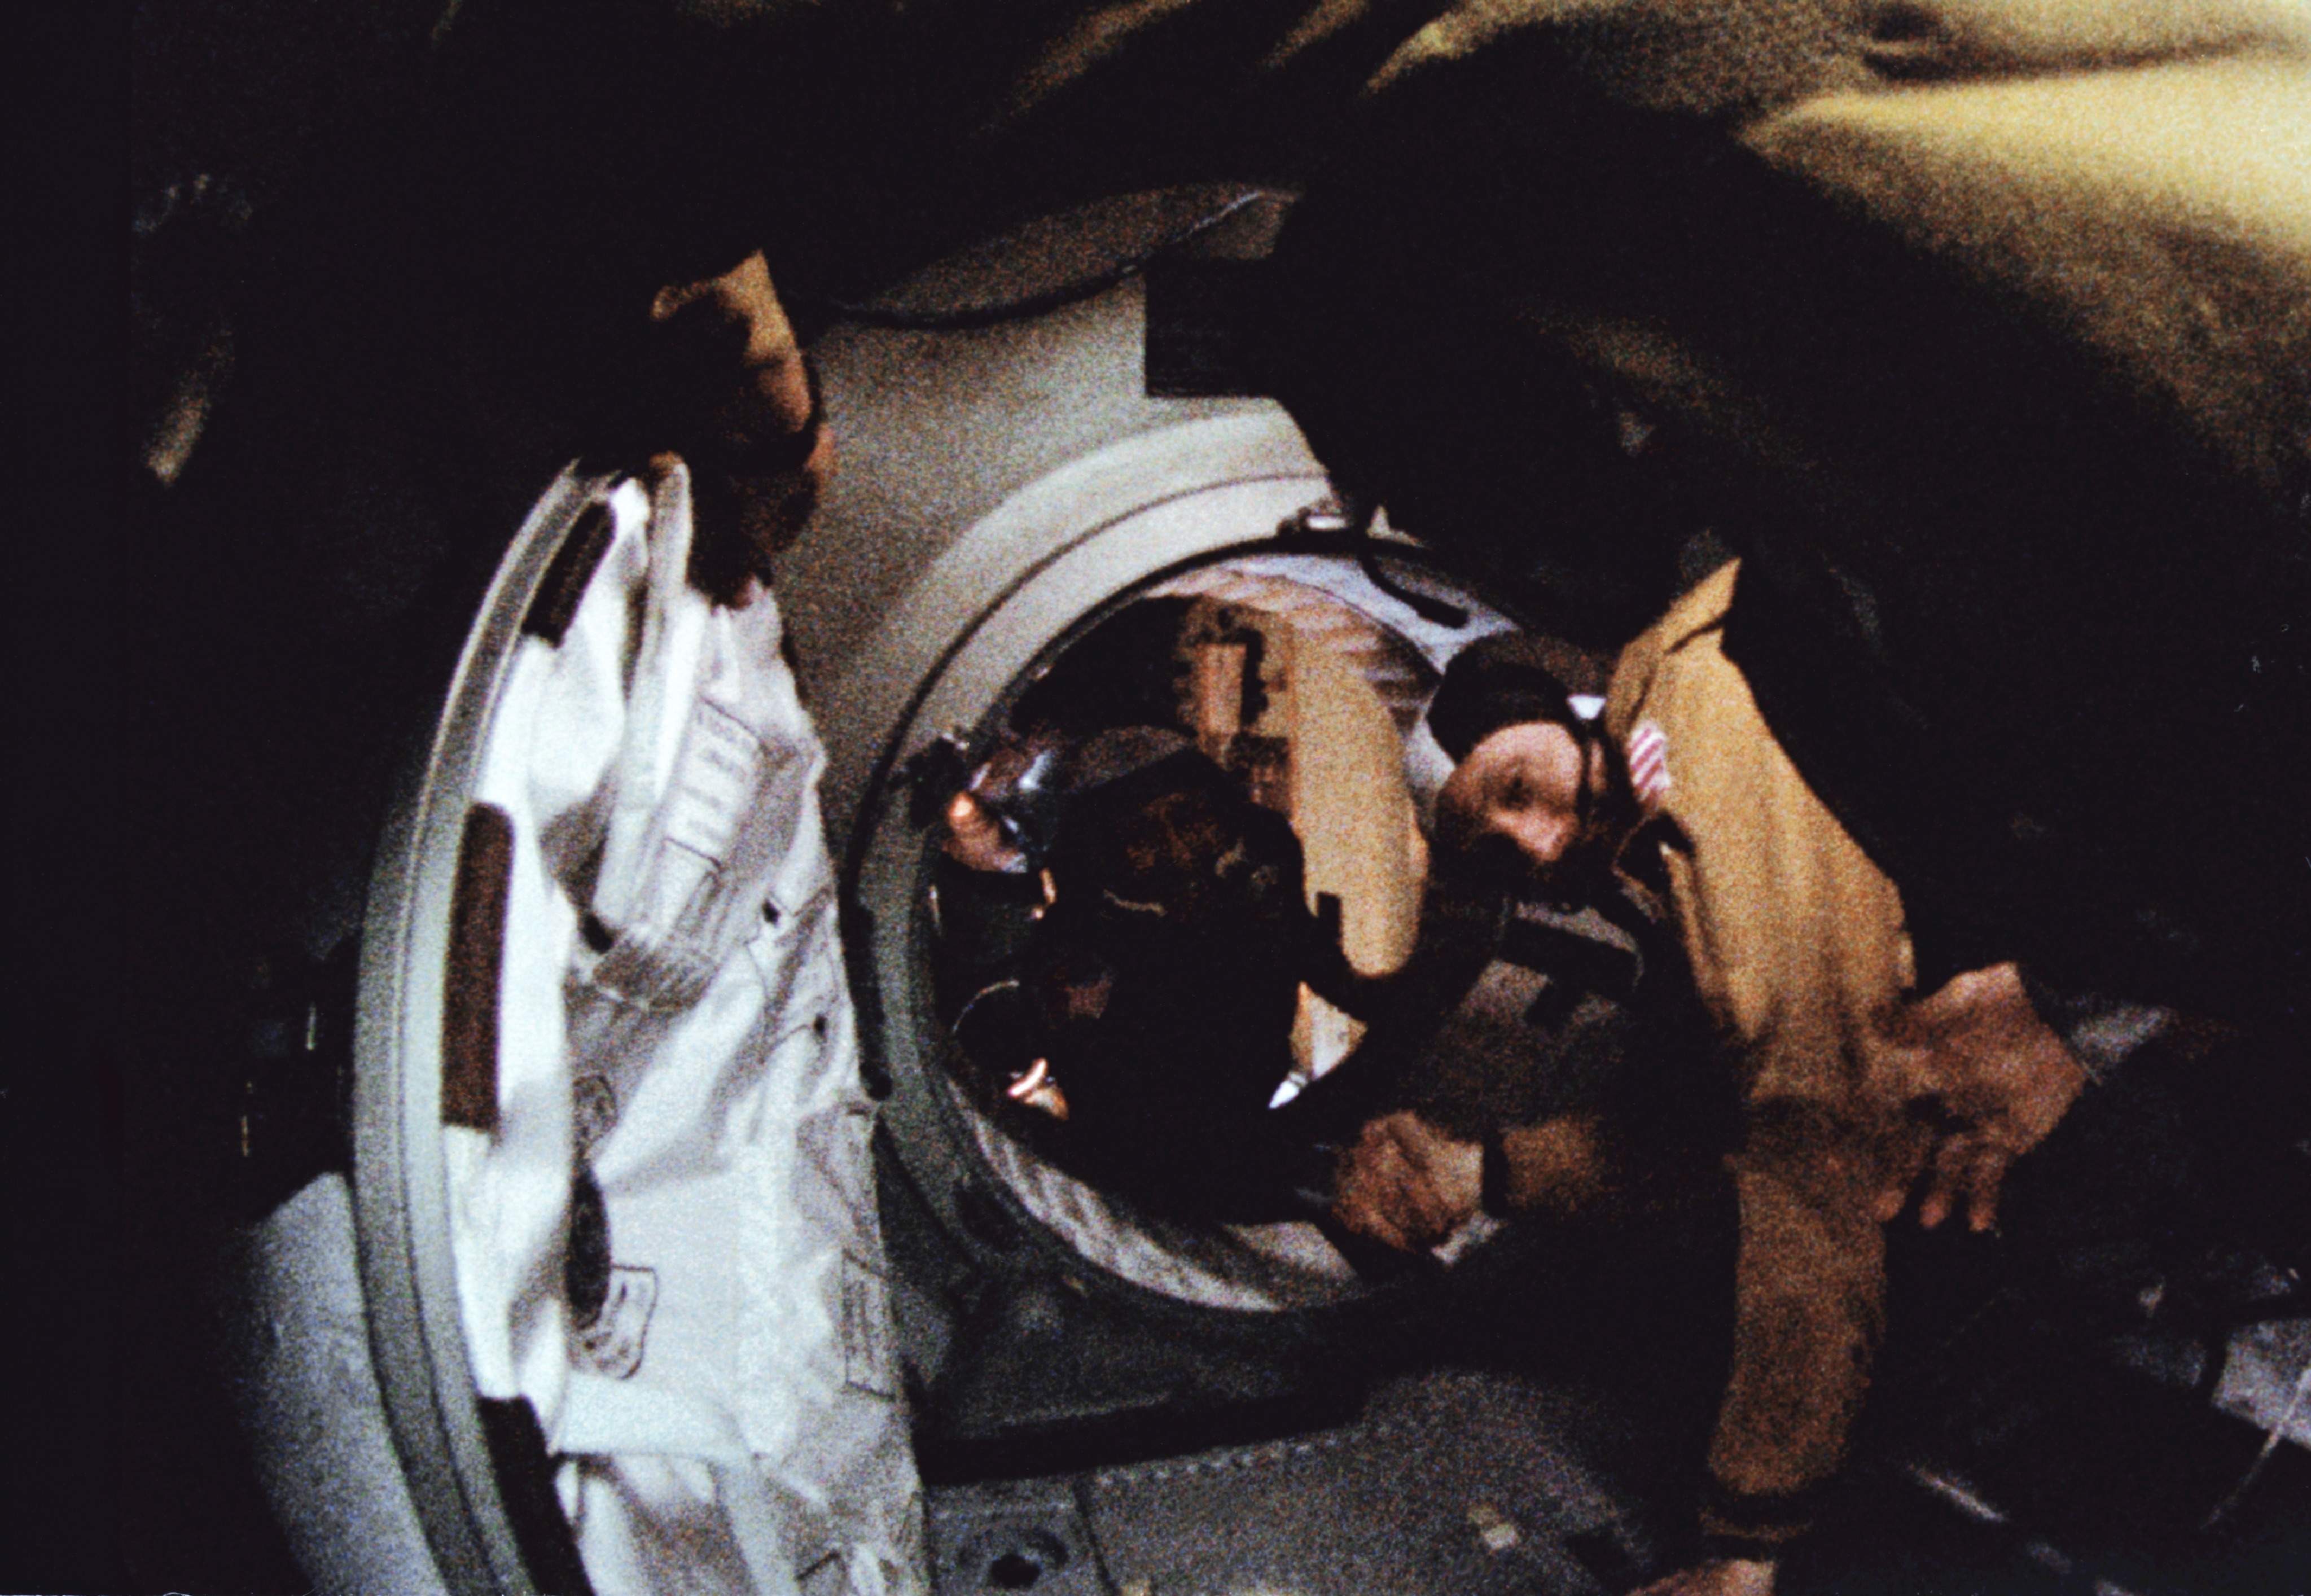 17 июля 1975 года. Союз Аполлон рукопожатие в космосе. Рукопожатие в космосе Союз Аполлон 1975. 1975 Стыковка кораблей Союз и Аполлон.